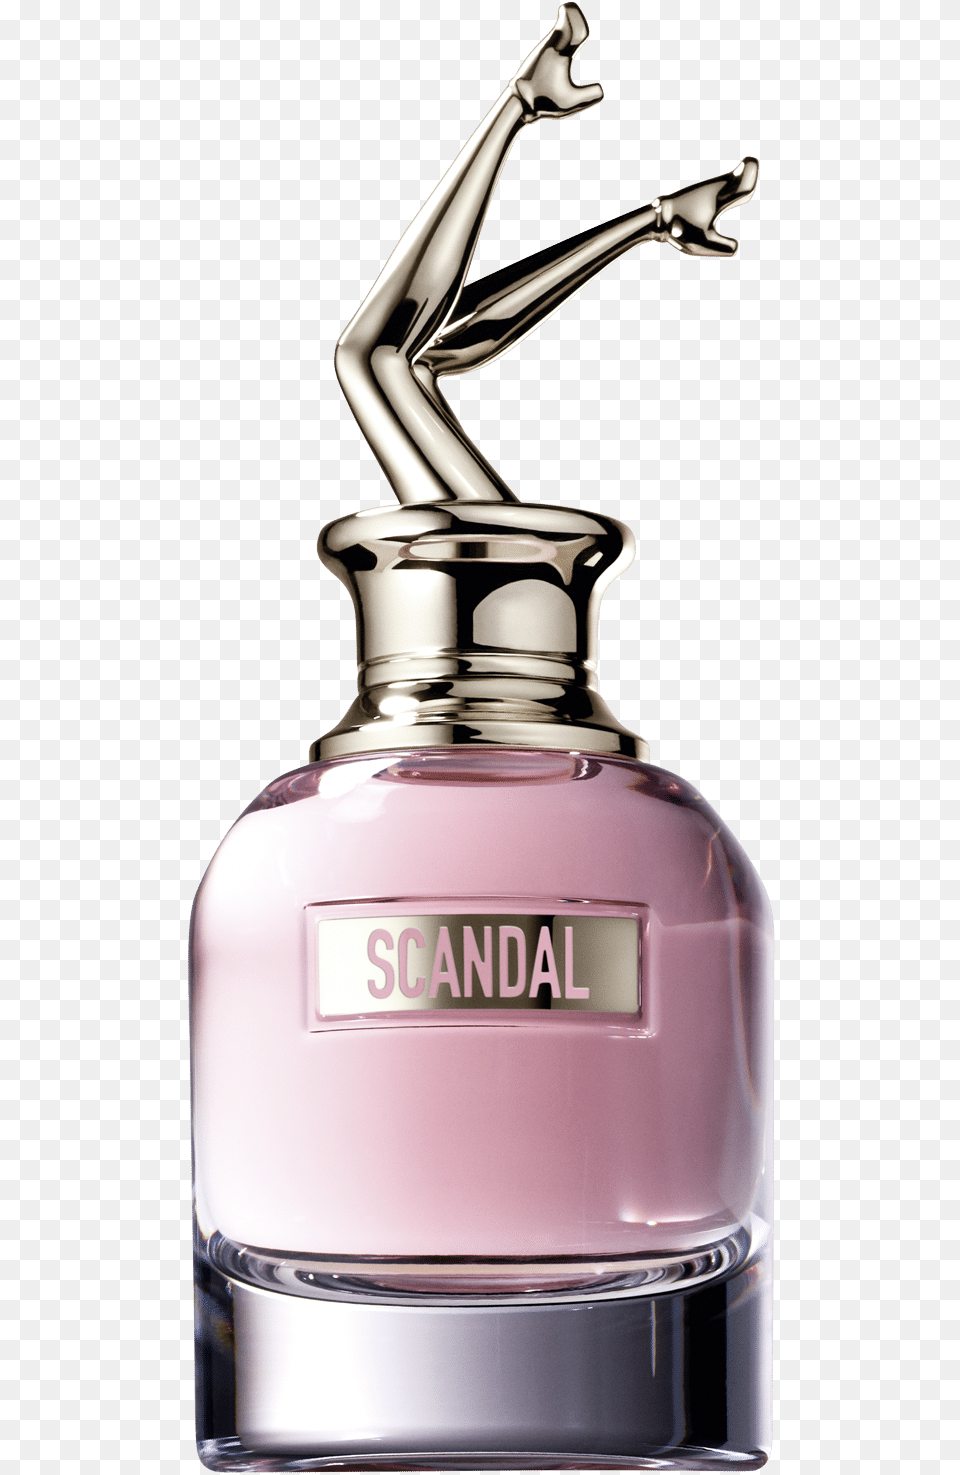 Jean Paul Gaultier Scandal A Paris Edt, Bottle, Cosmetics, Perfume Png Image